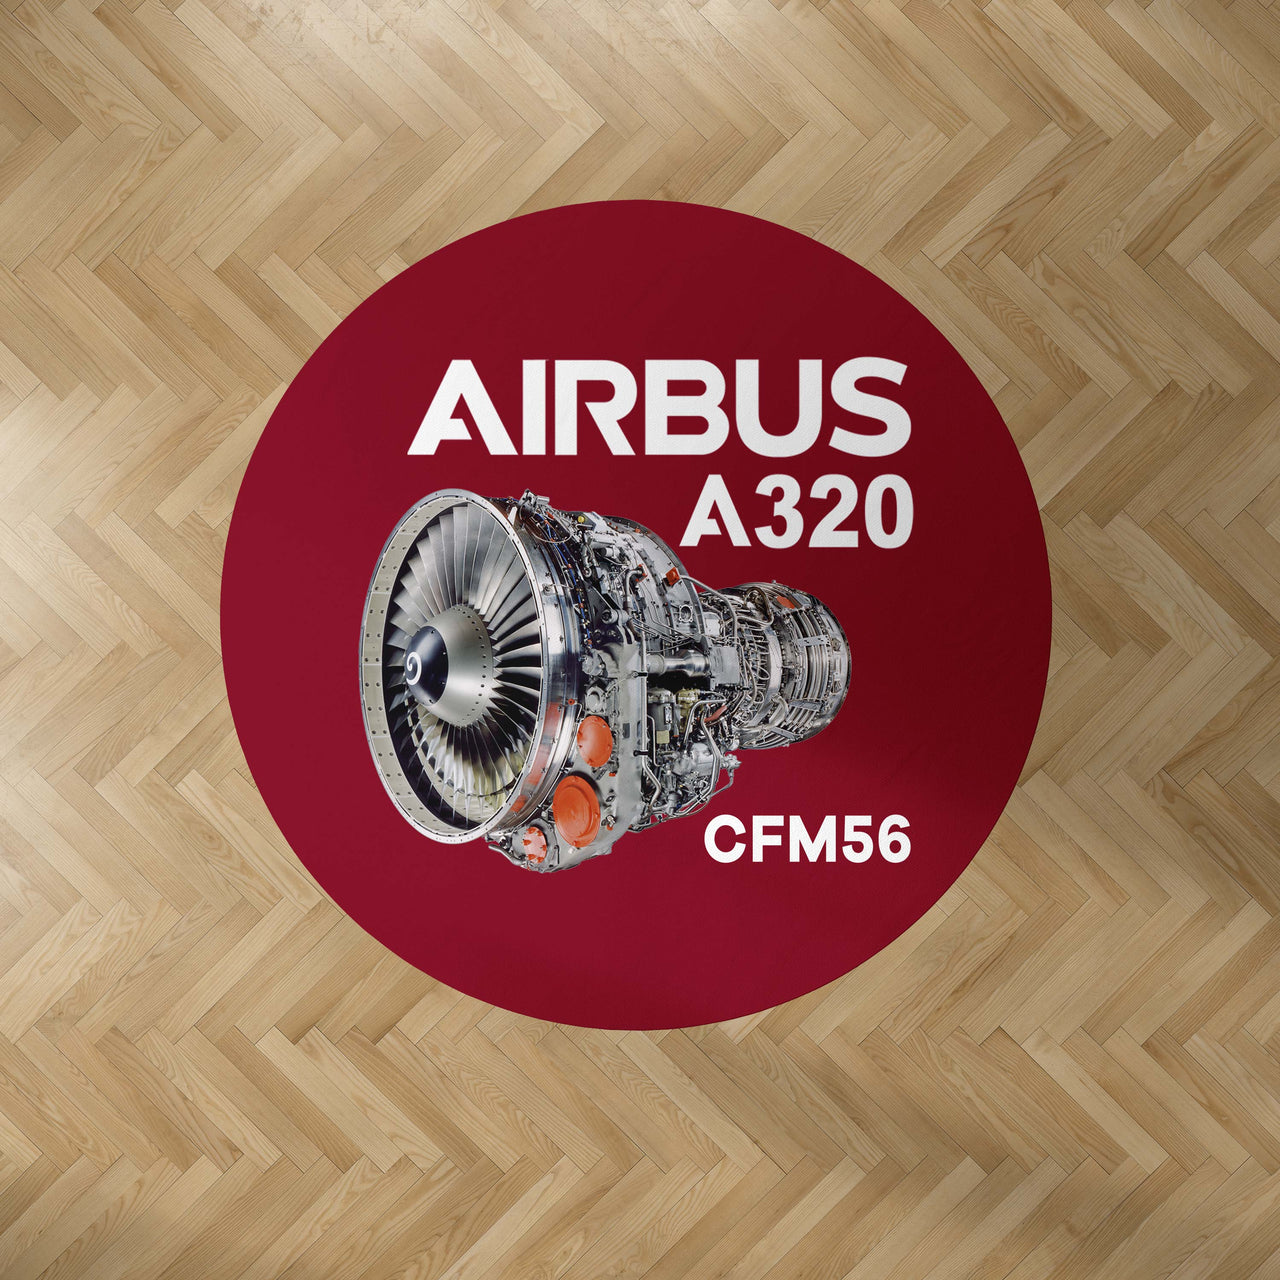 Airbus A320 & CFM56 Engine.png Designed Carpet & Floor Mats (Round)